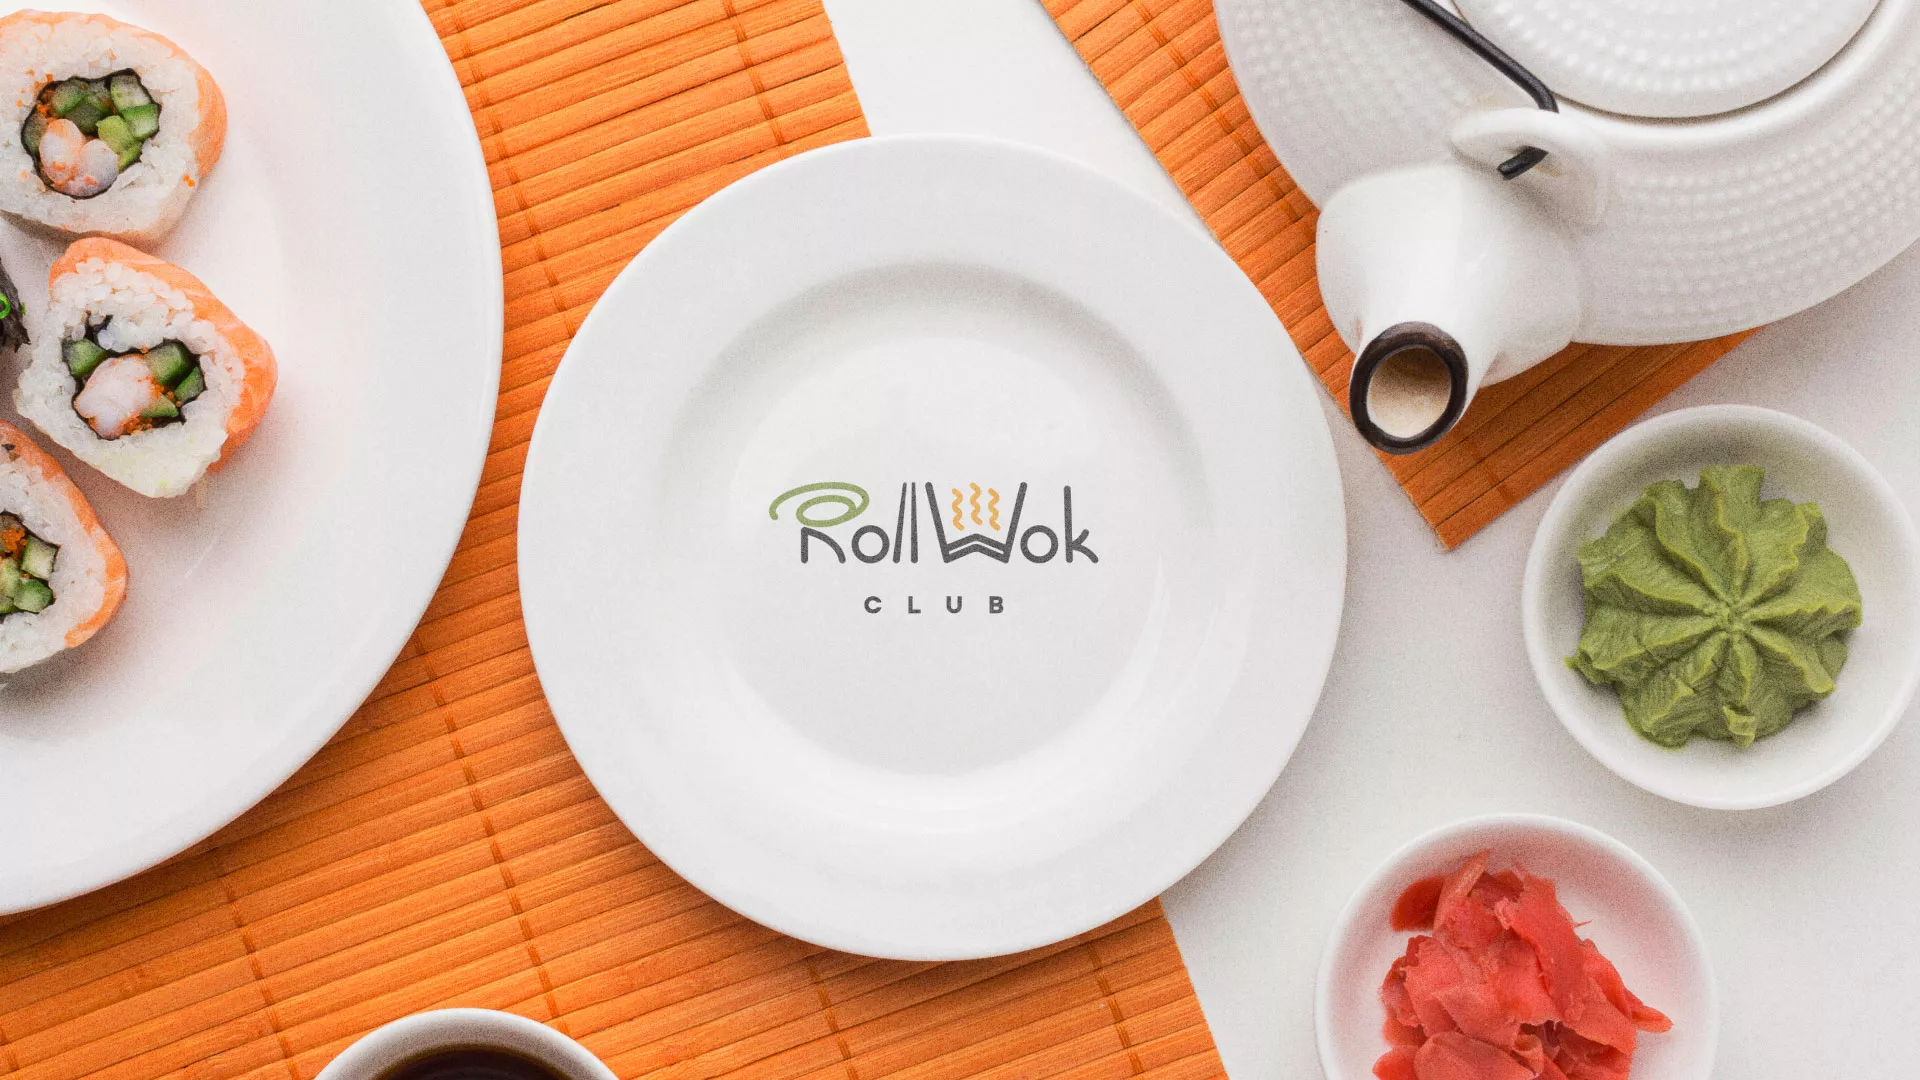 Разработка логотипа и фирменного стиля суши-бара «Roll Wok Club» в Севске